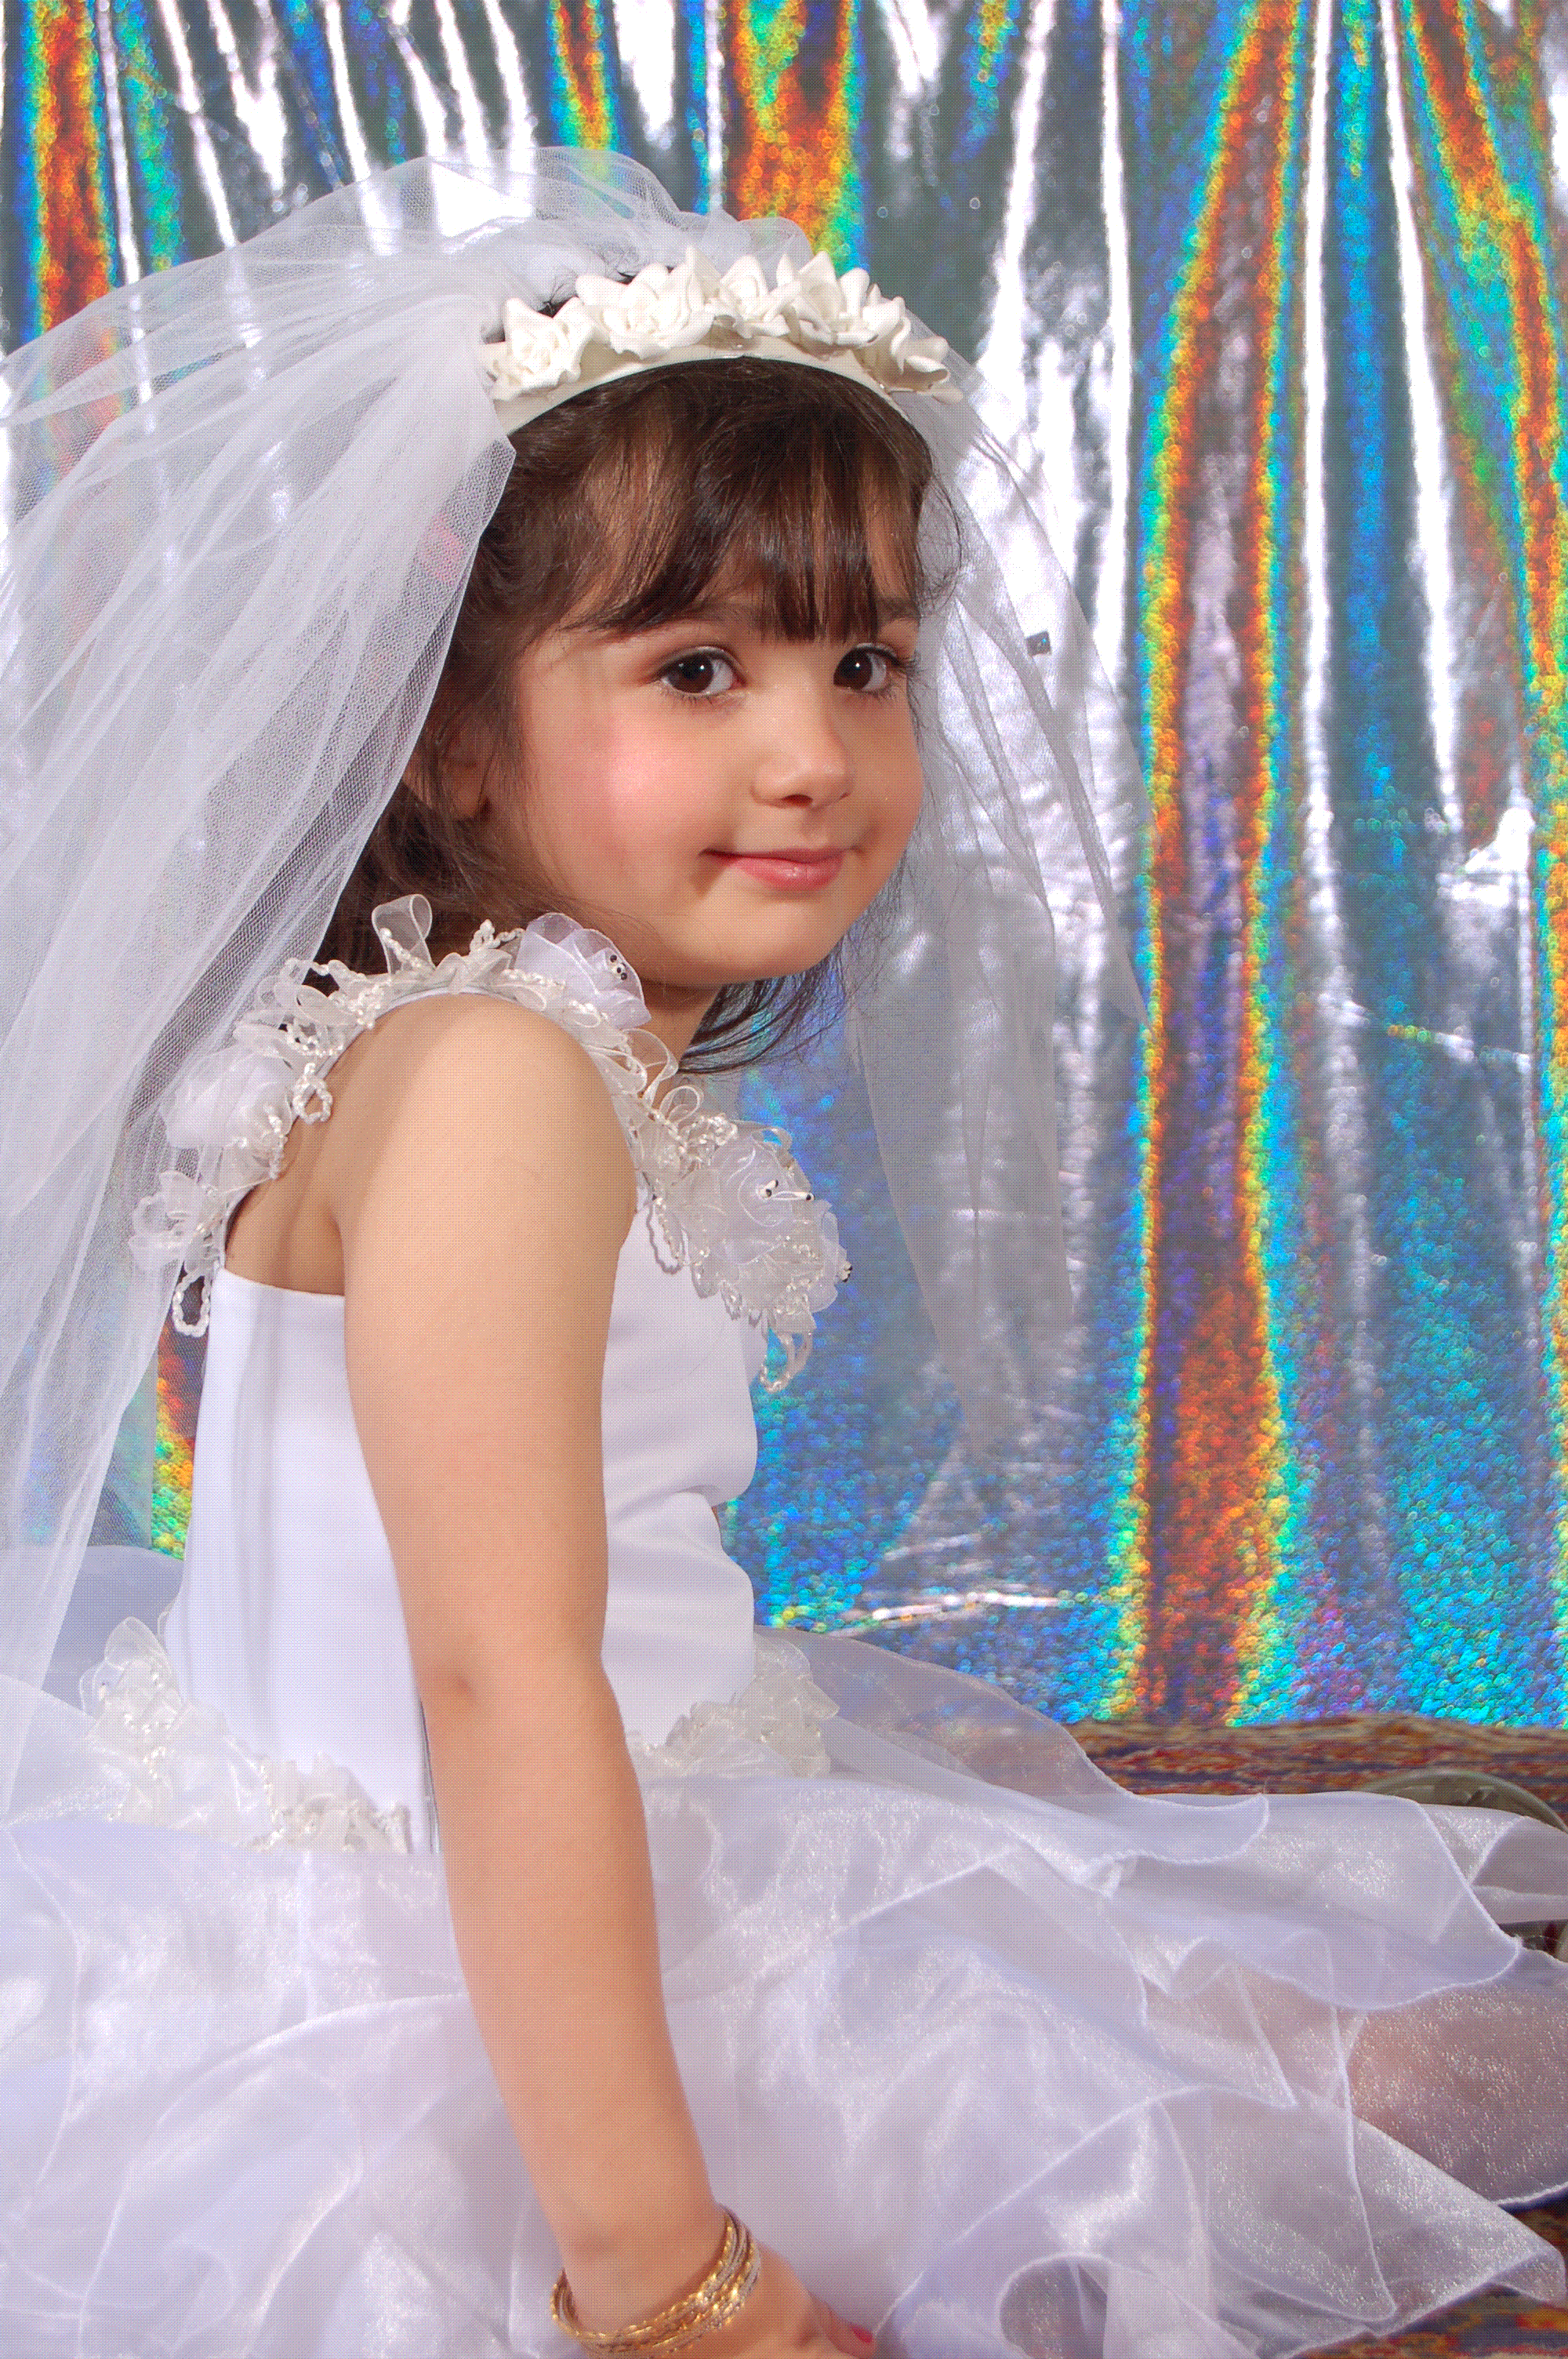 Wedding dresses for little girls Photo - 3